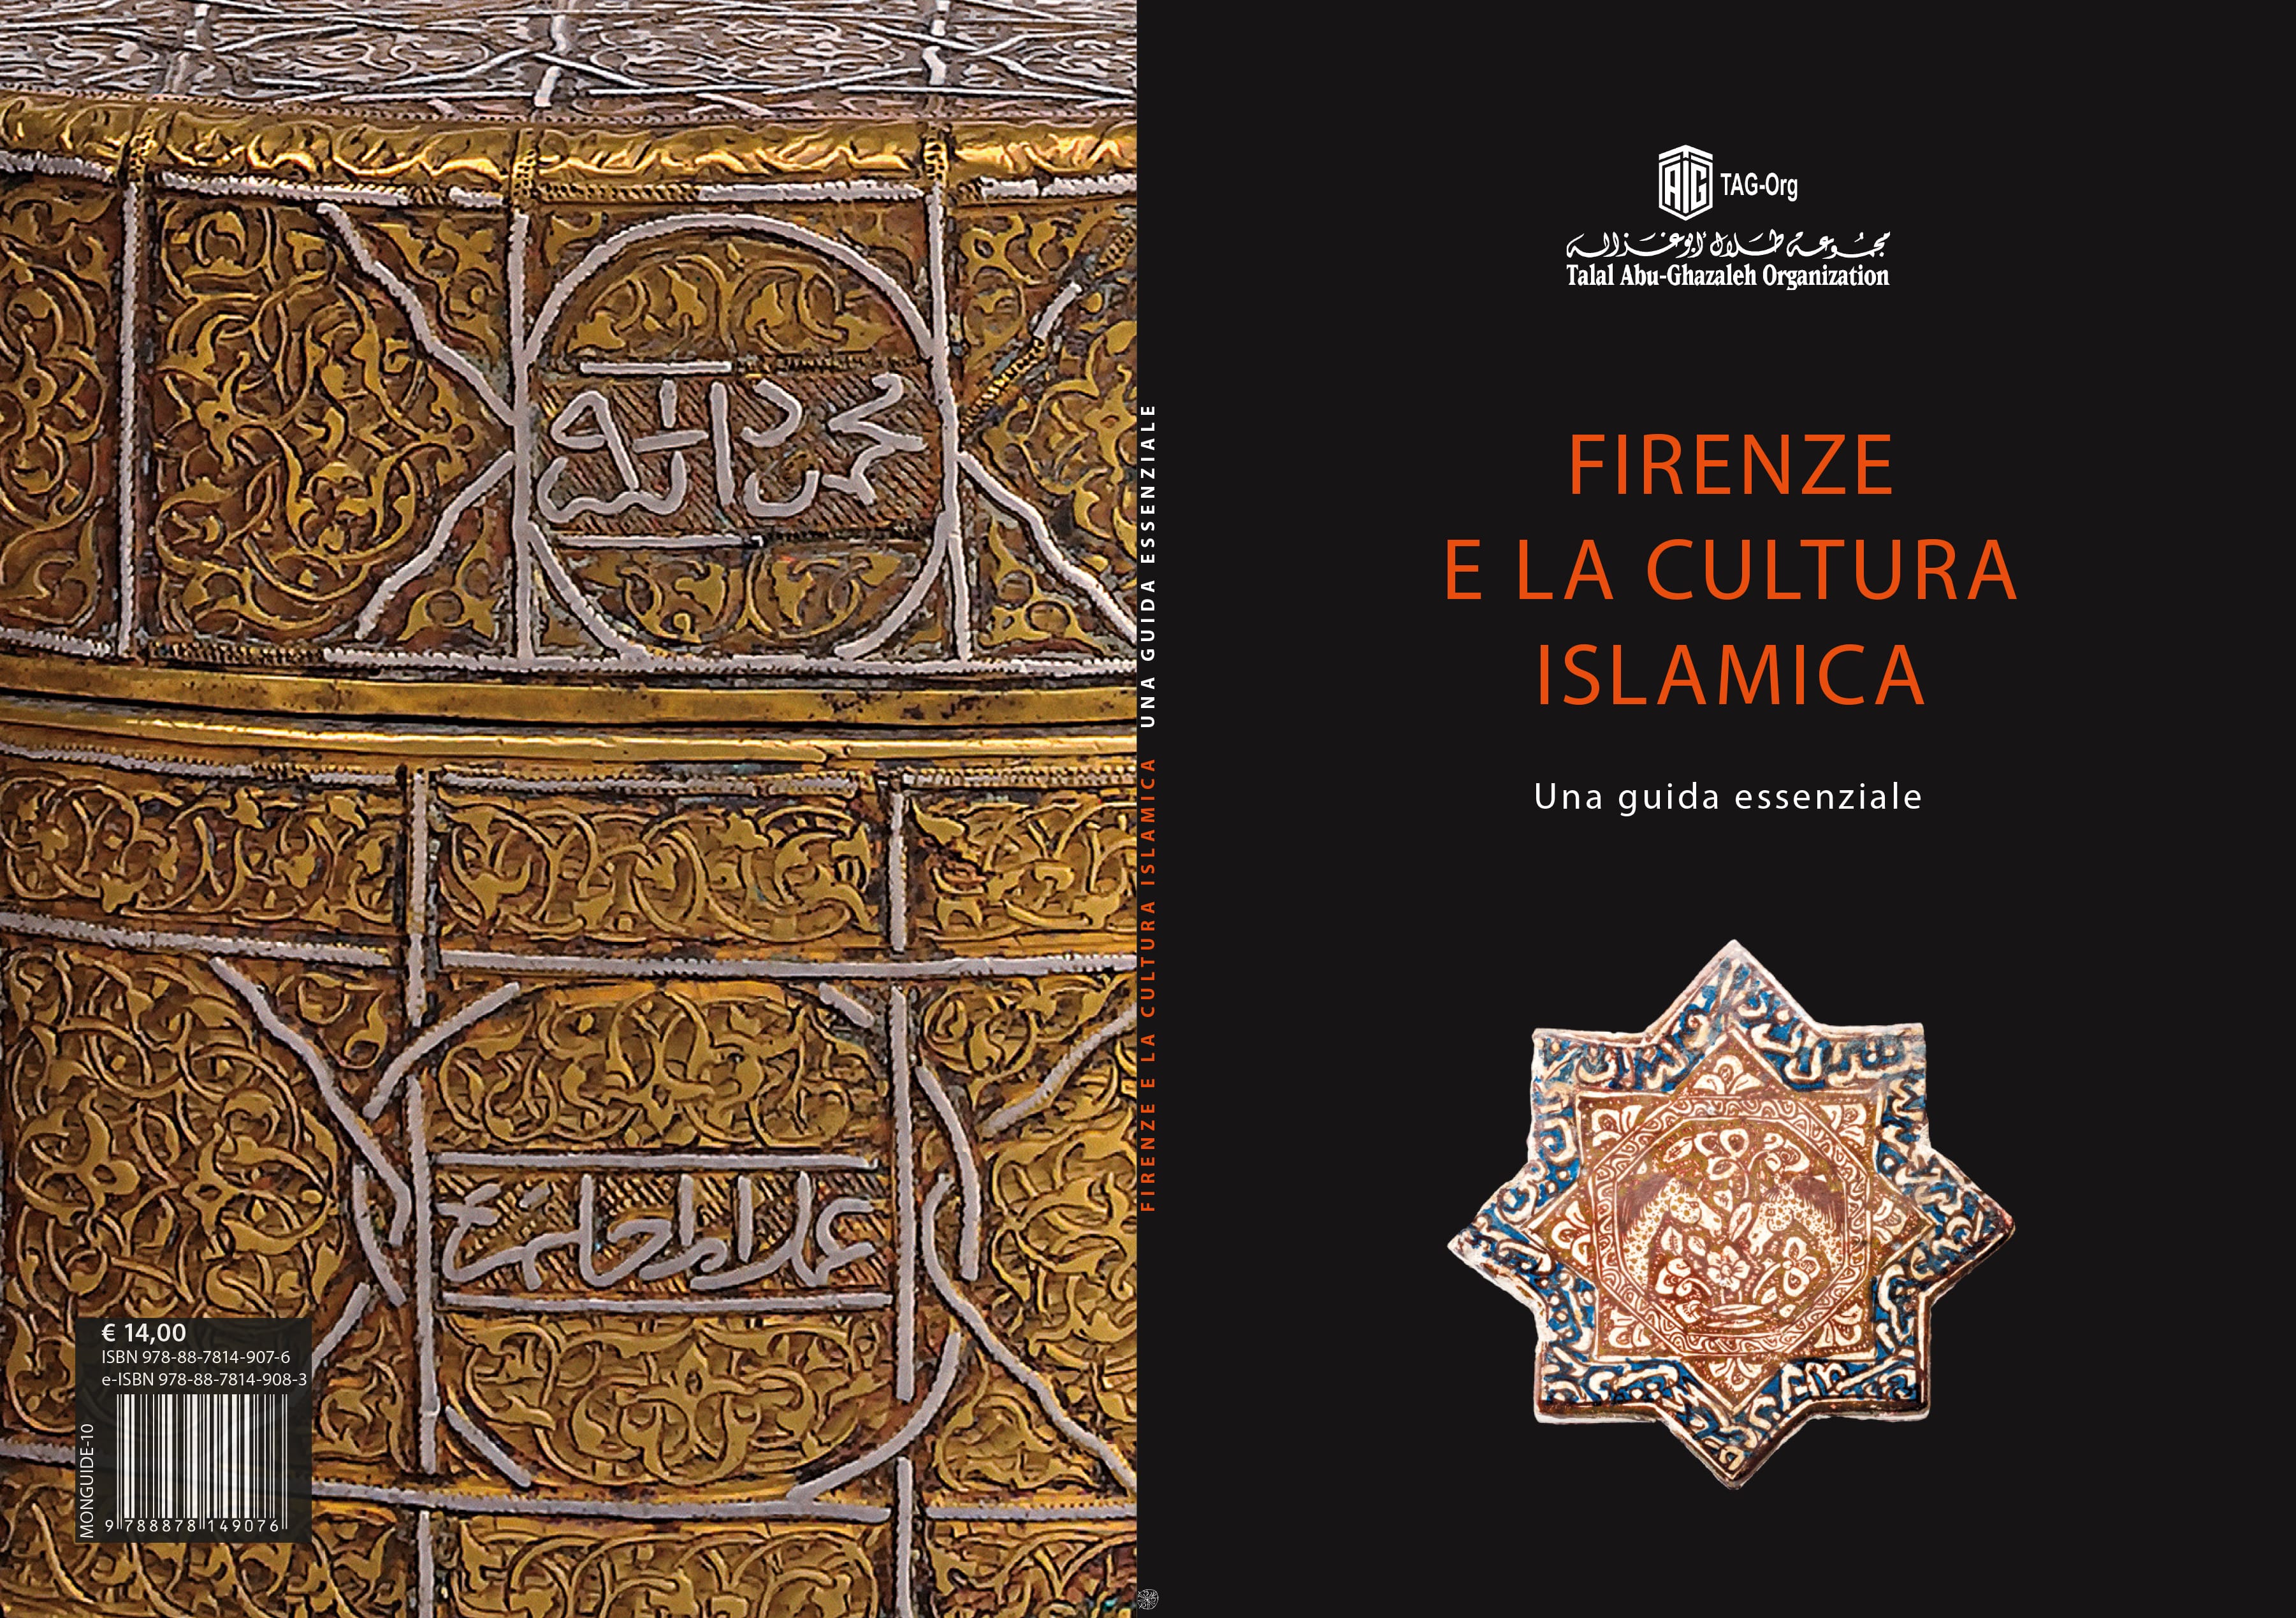 Tutto l’Islam a Firenze, in una guida